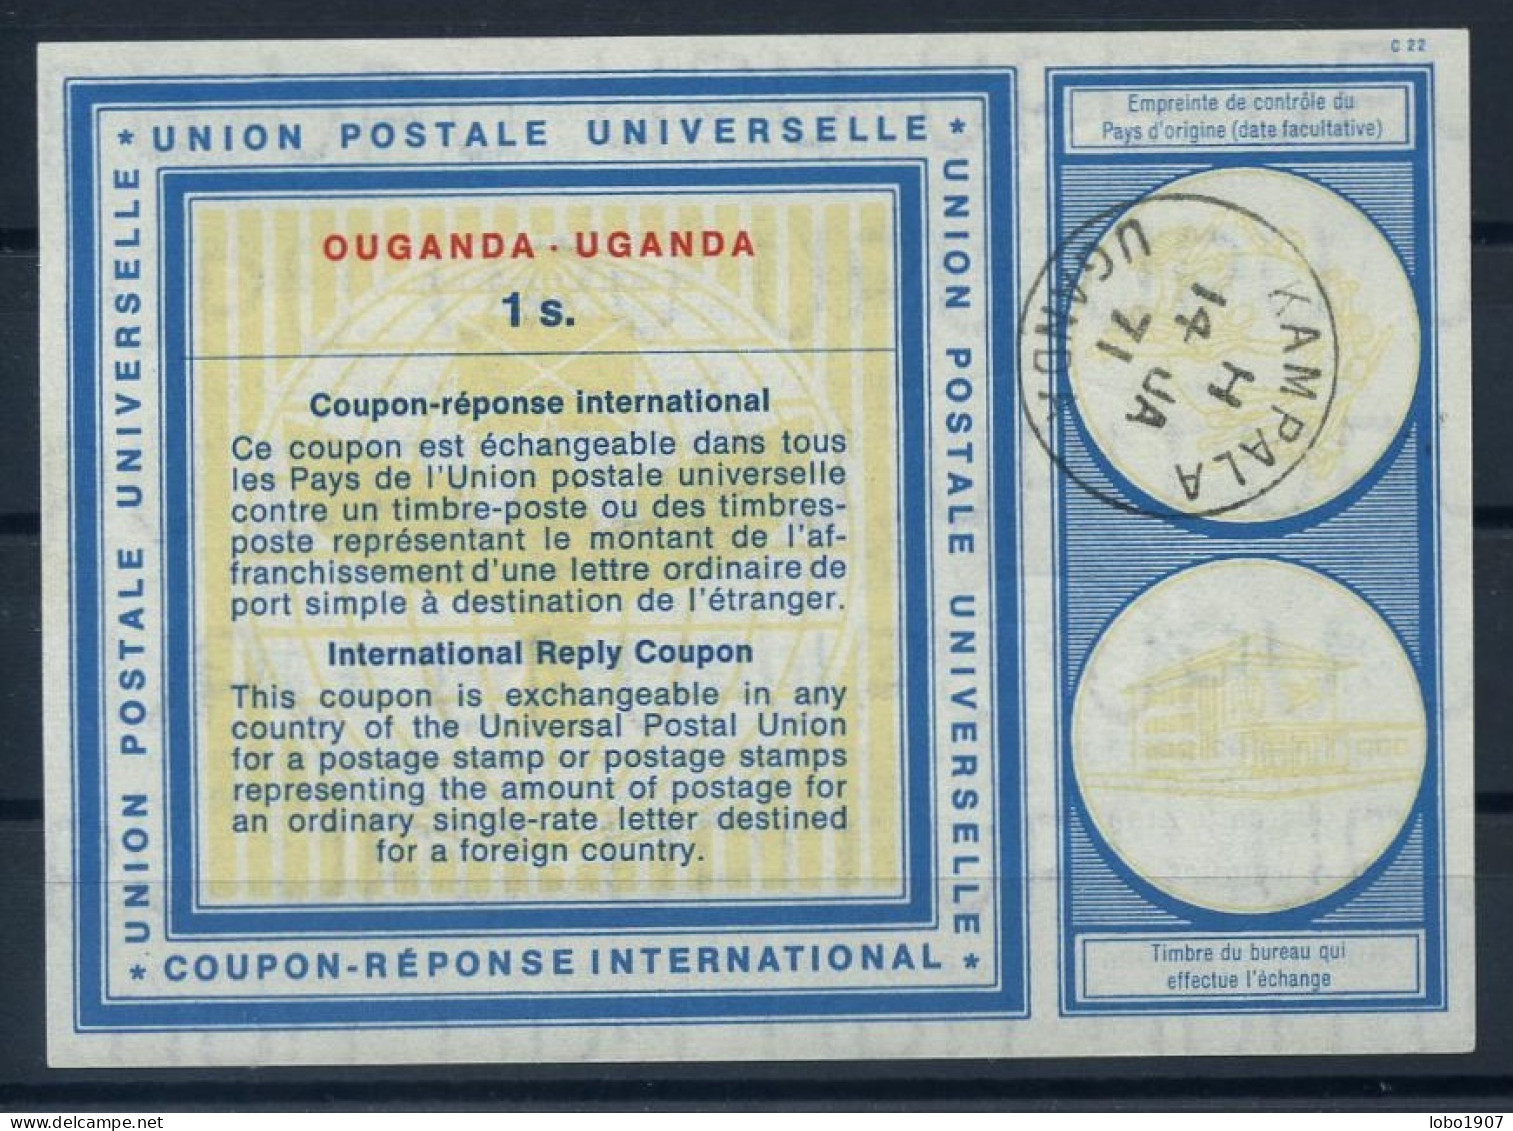 OUGANDA UGANDA  Vi19  1s.  International Reply Coupon Reponse Antwortschein IRC IAS  O KAMPALA UGANDA 14.01.71 - Kenya, Oeganda & Tanganyika